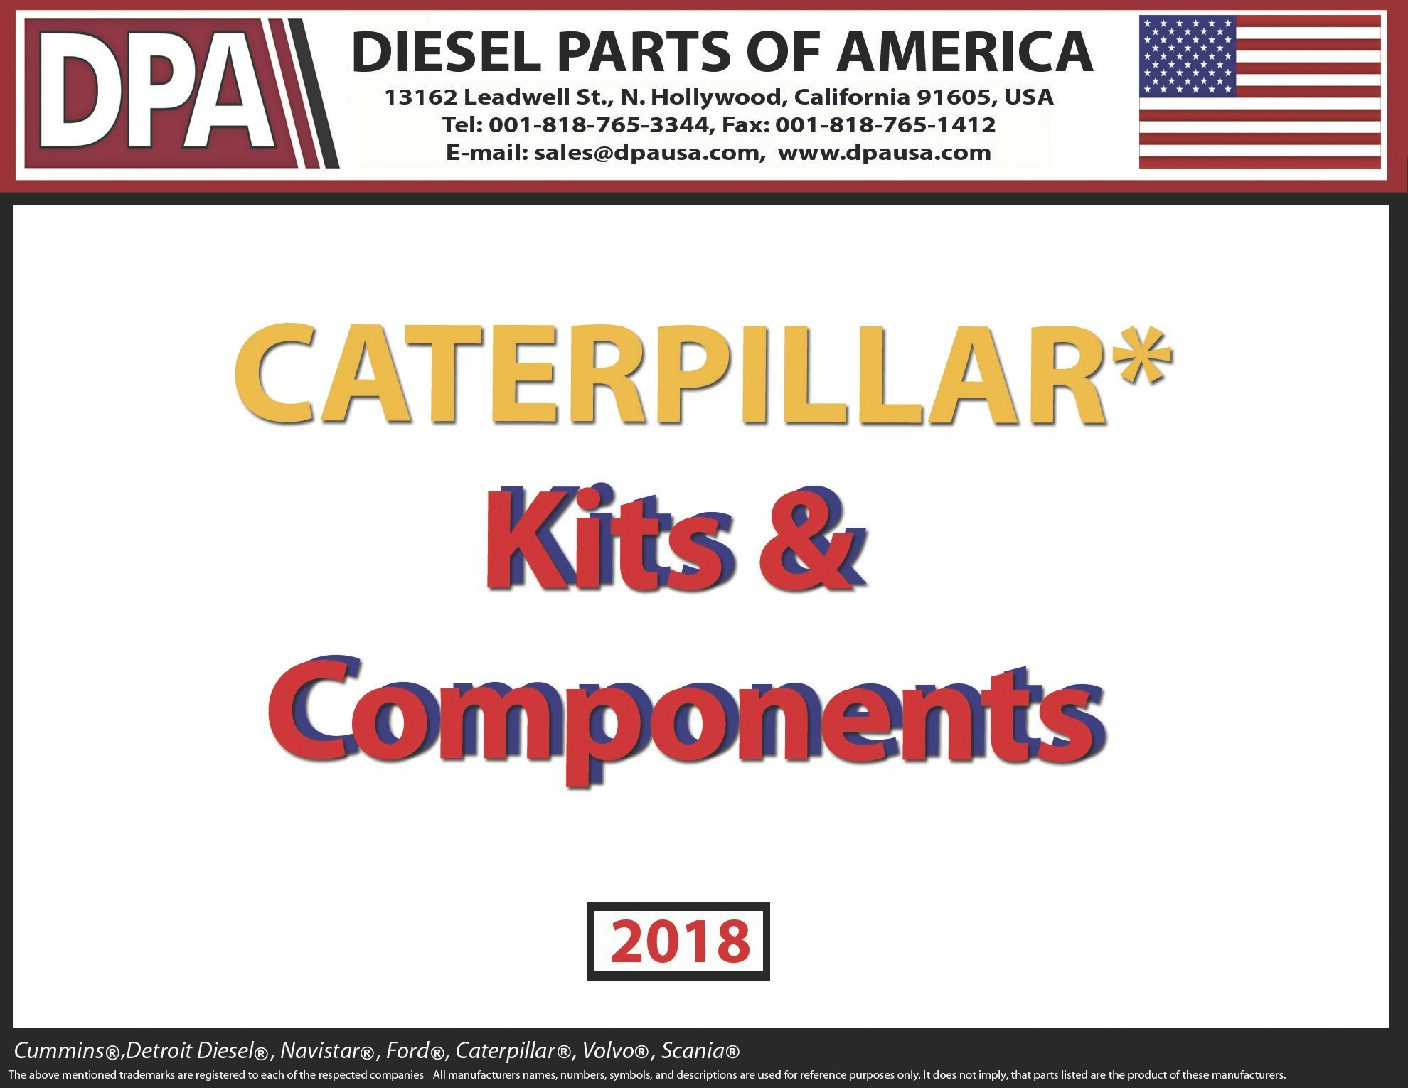 dpa_kits_components_cat-pdf.jpg